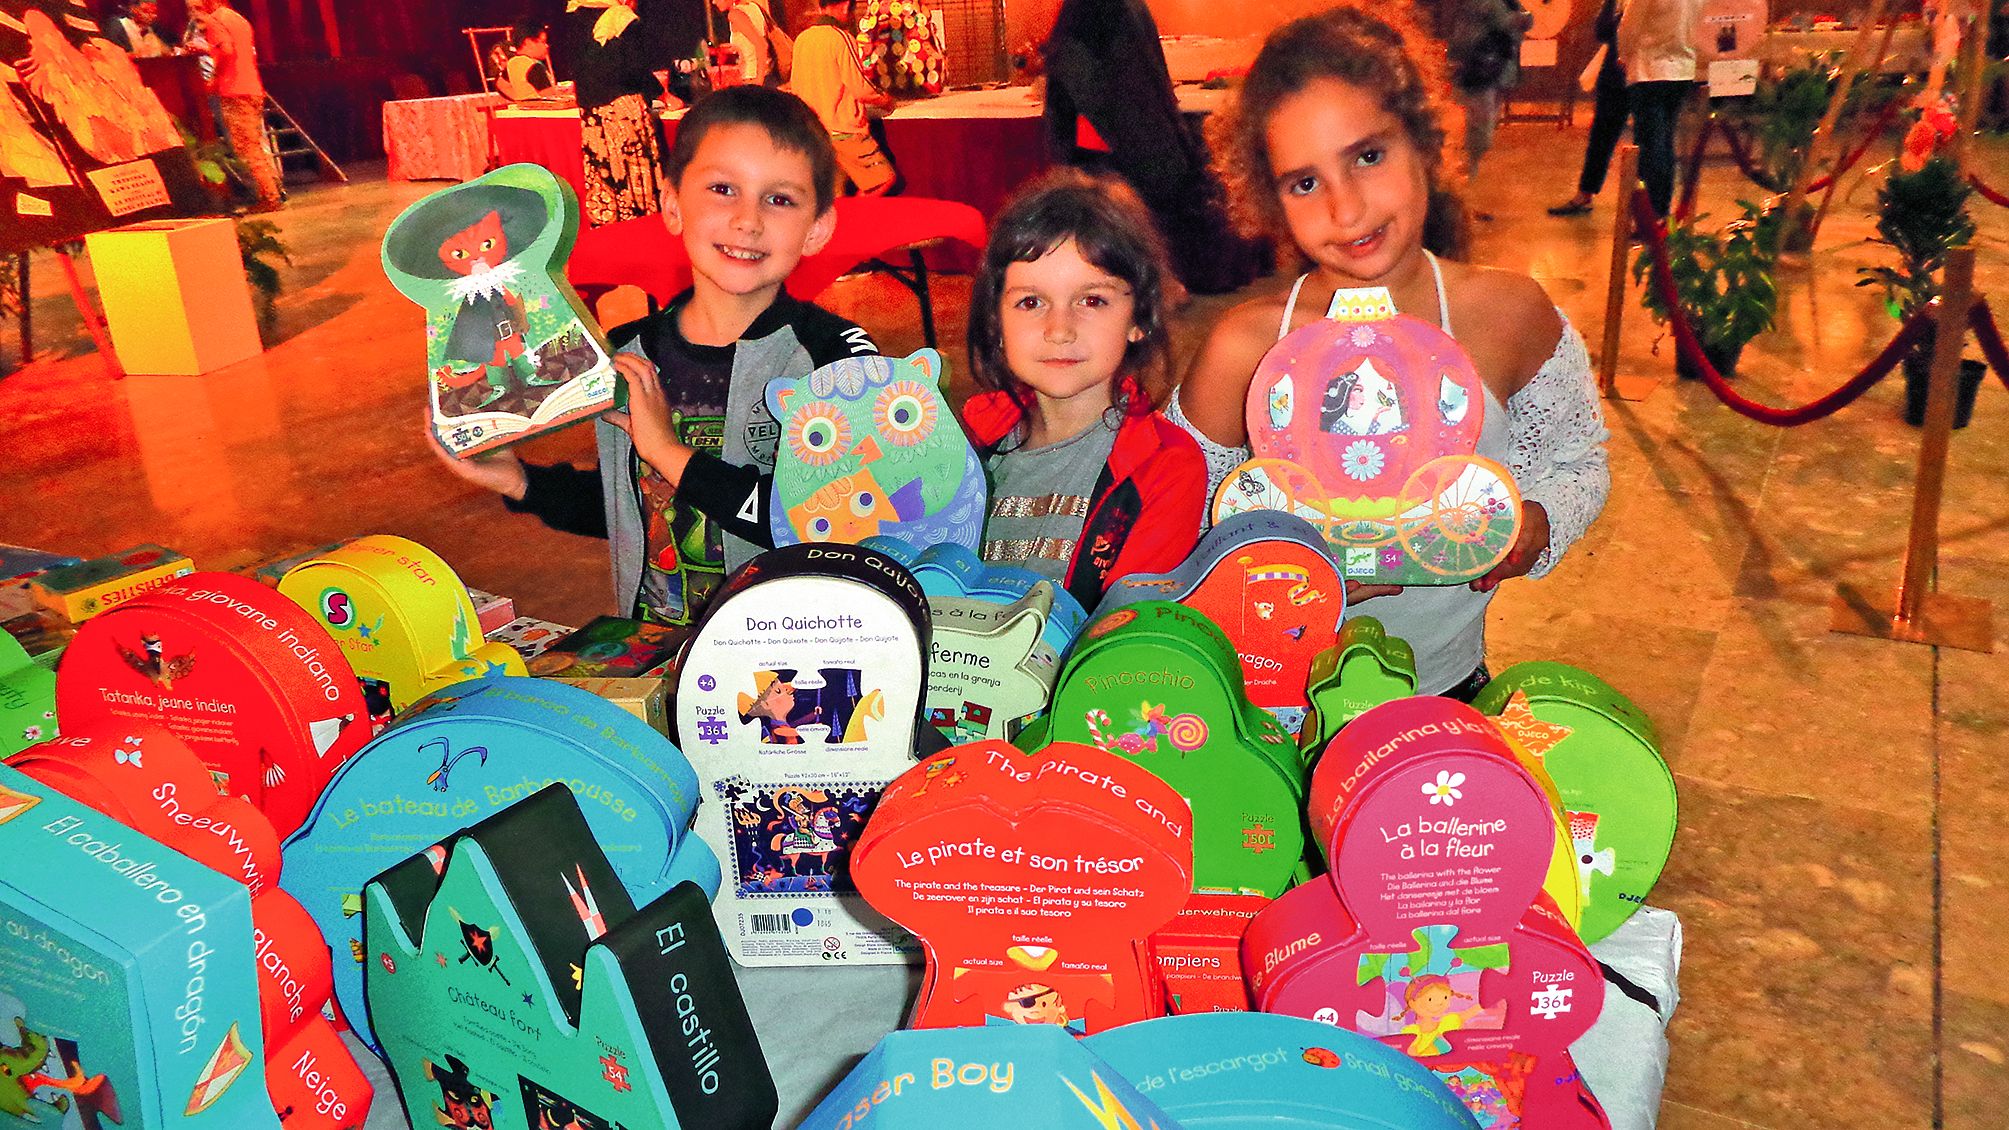 Au cours de cette soirée, Elyna, son frère Soan et Scellya ont particulièrement apprécié les ouvrages pour enfants présentés lors de ce festival, ainsi que les puzzles proposés à la vente.